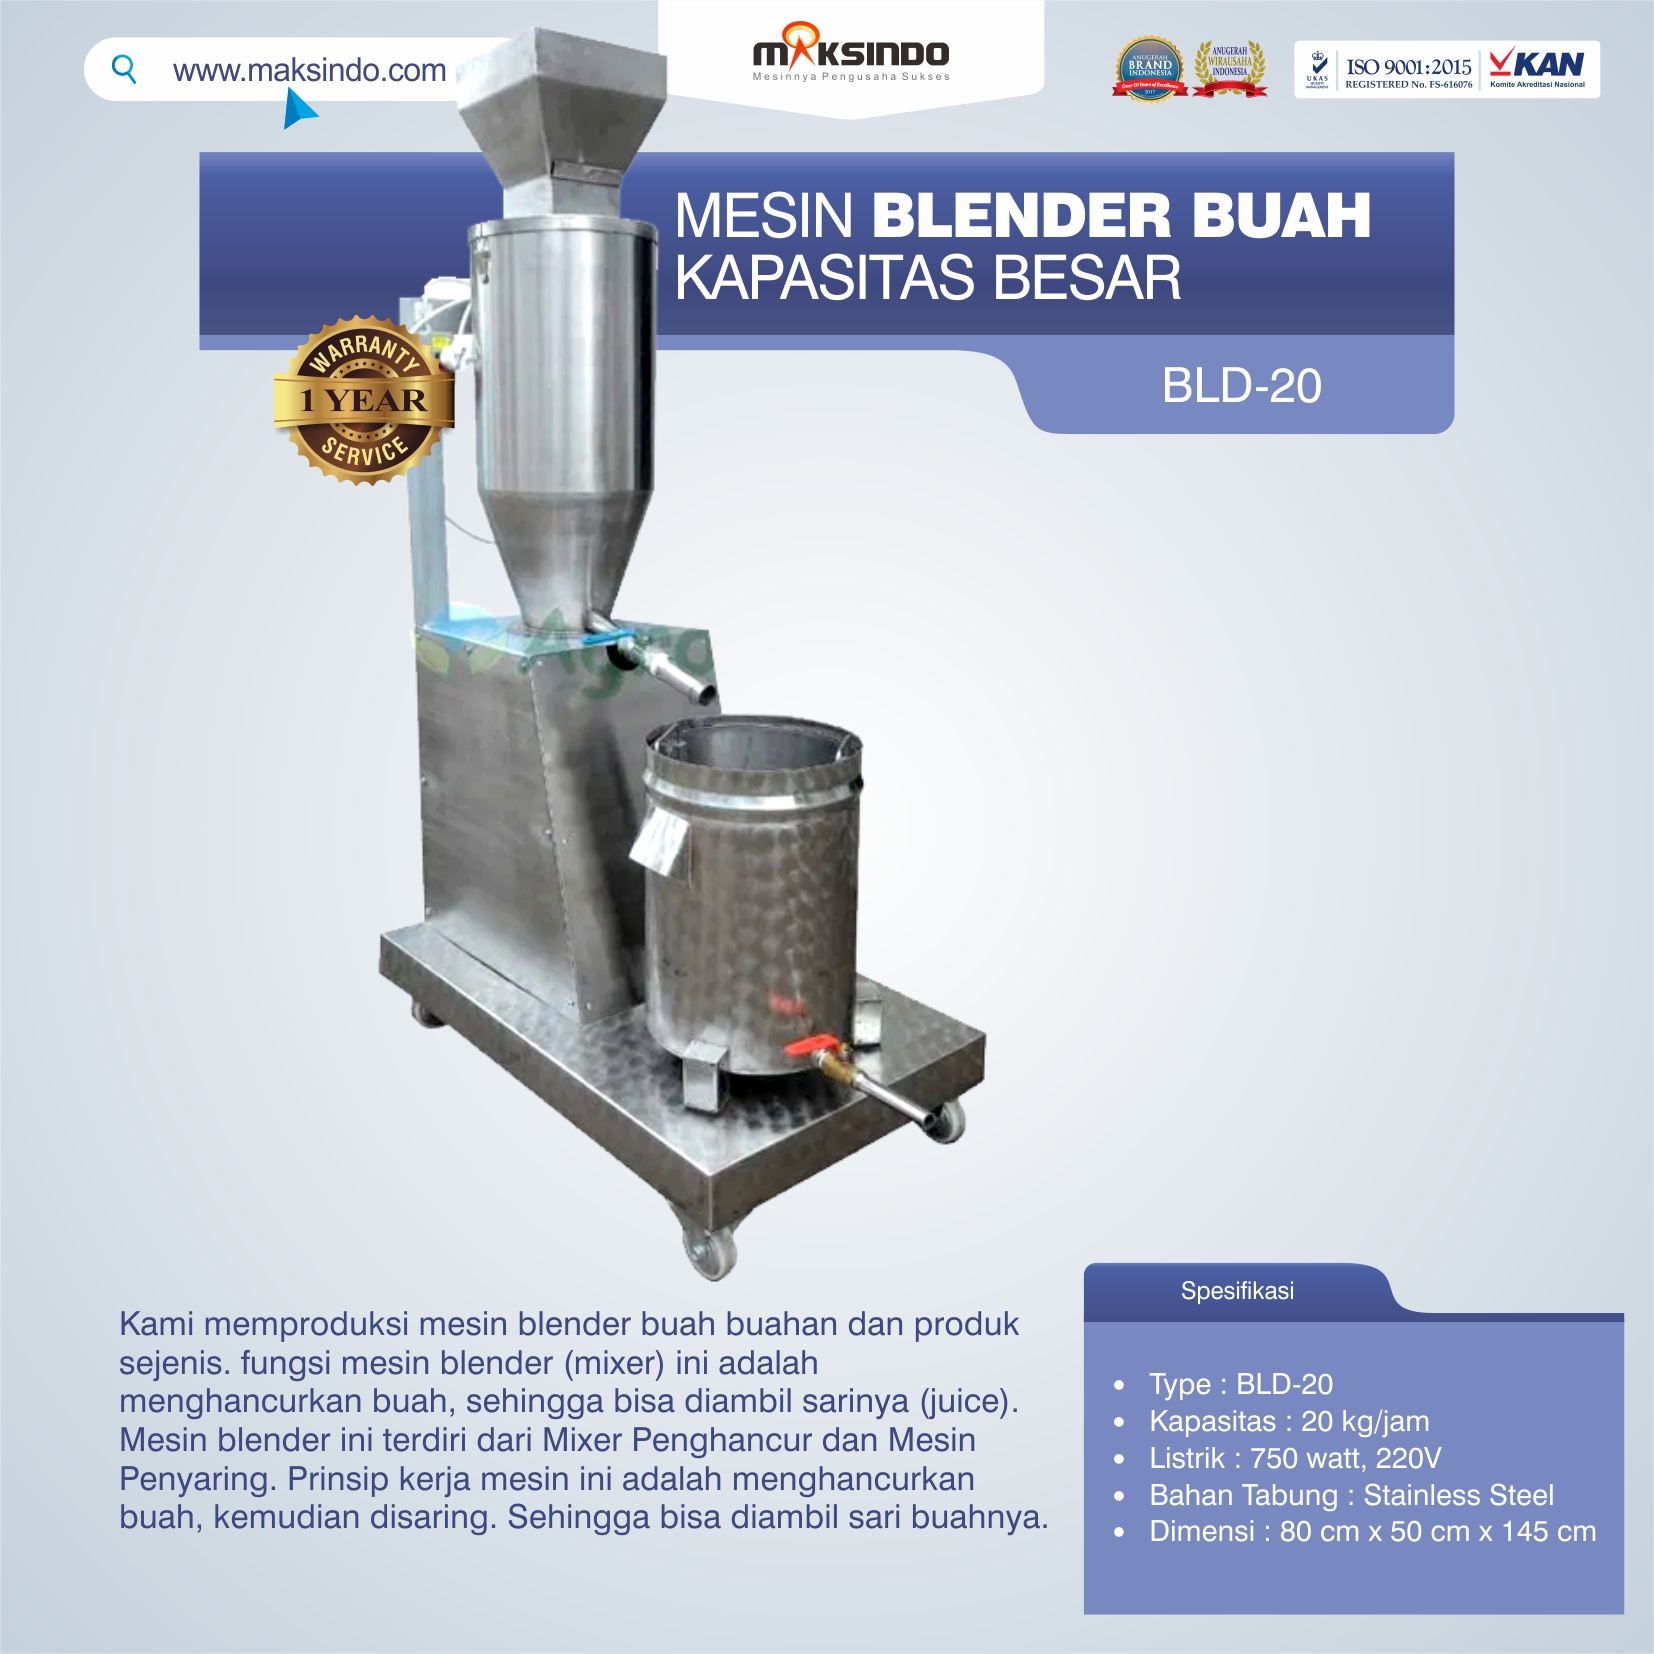 Jual Mesin Blender Buah Kapasitas Besar di Malang